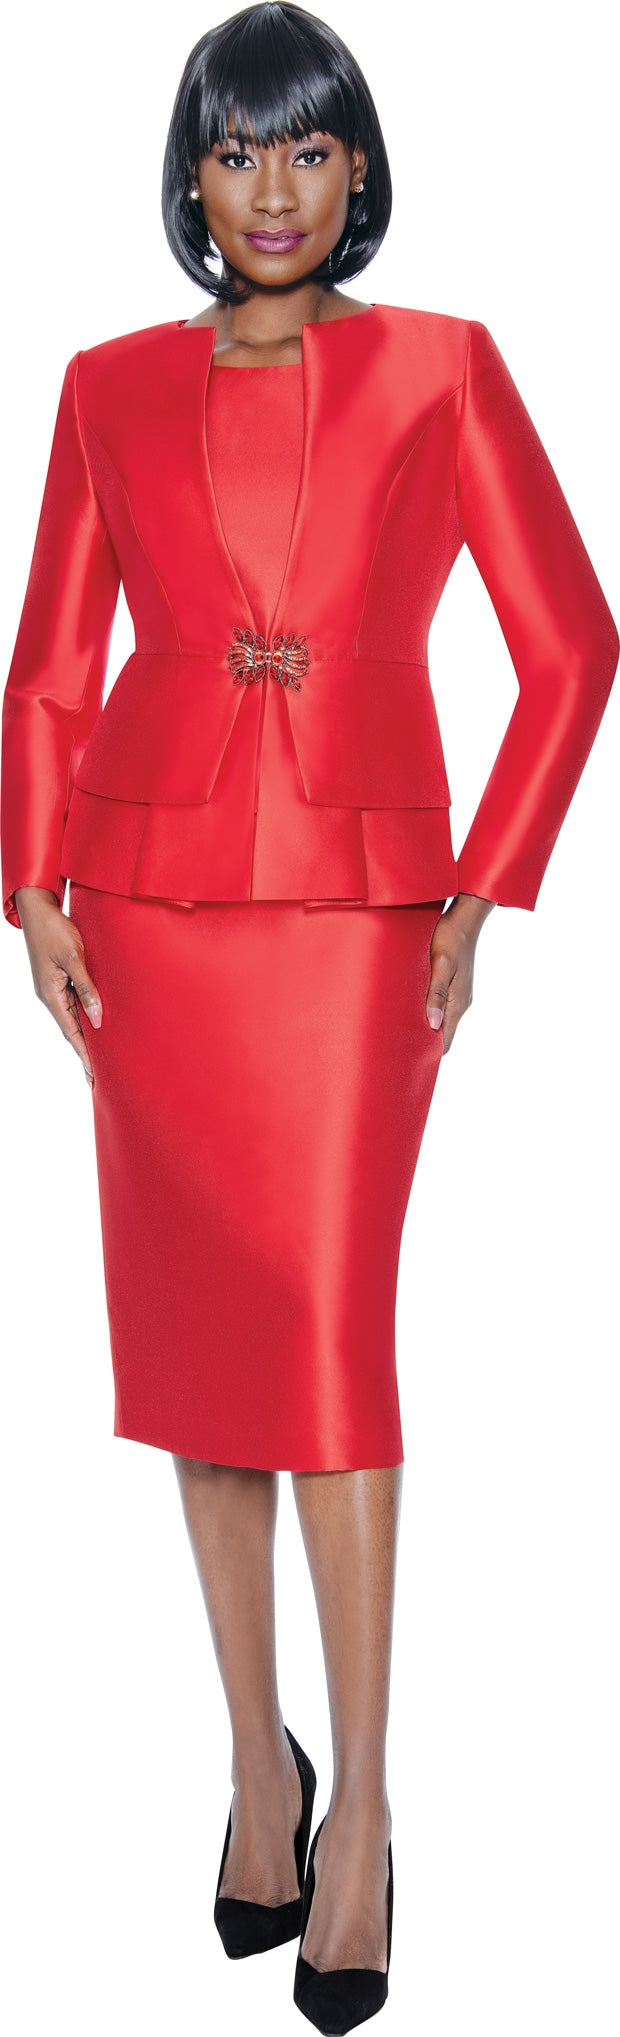 Terramina 7990 3pc Skirt Suit